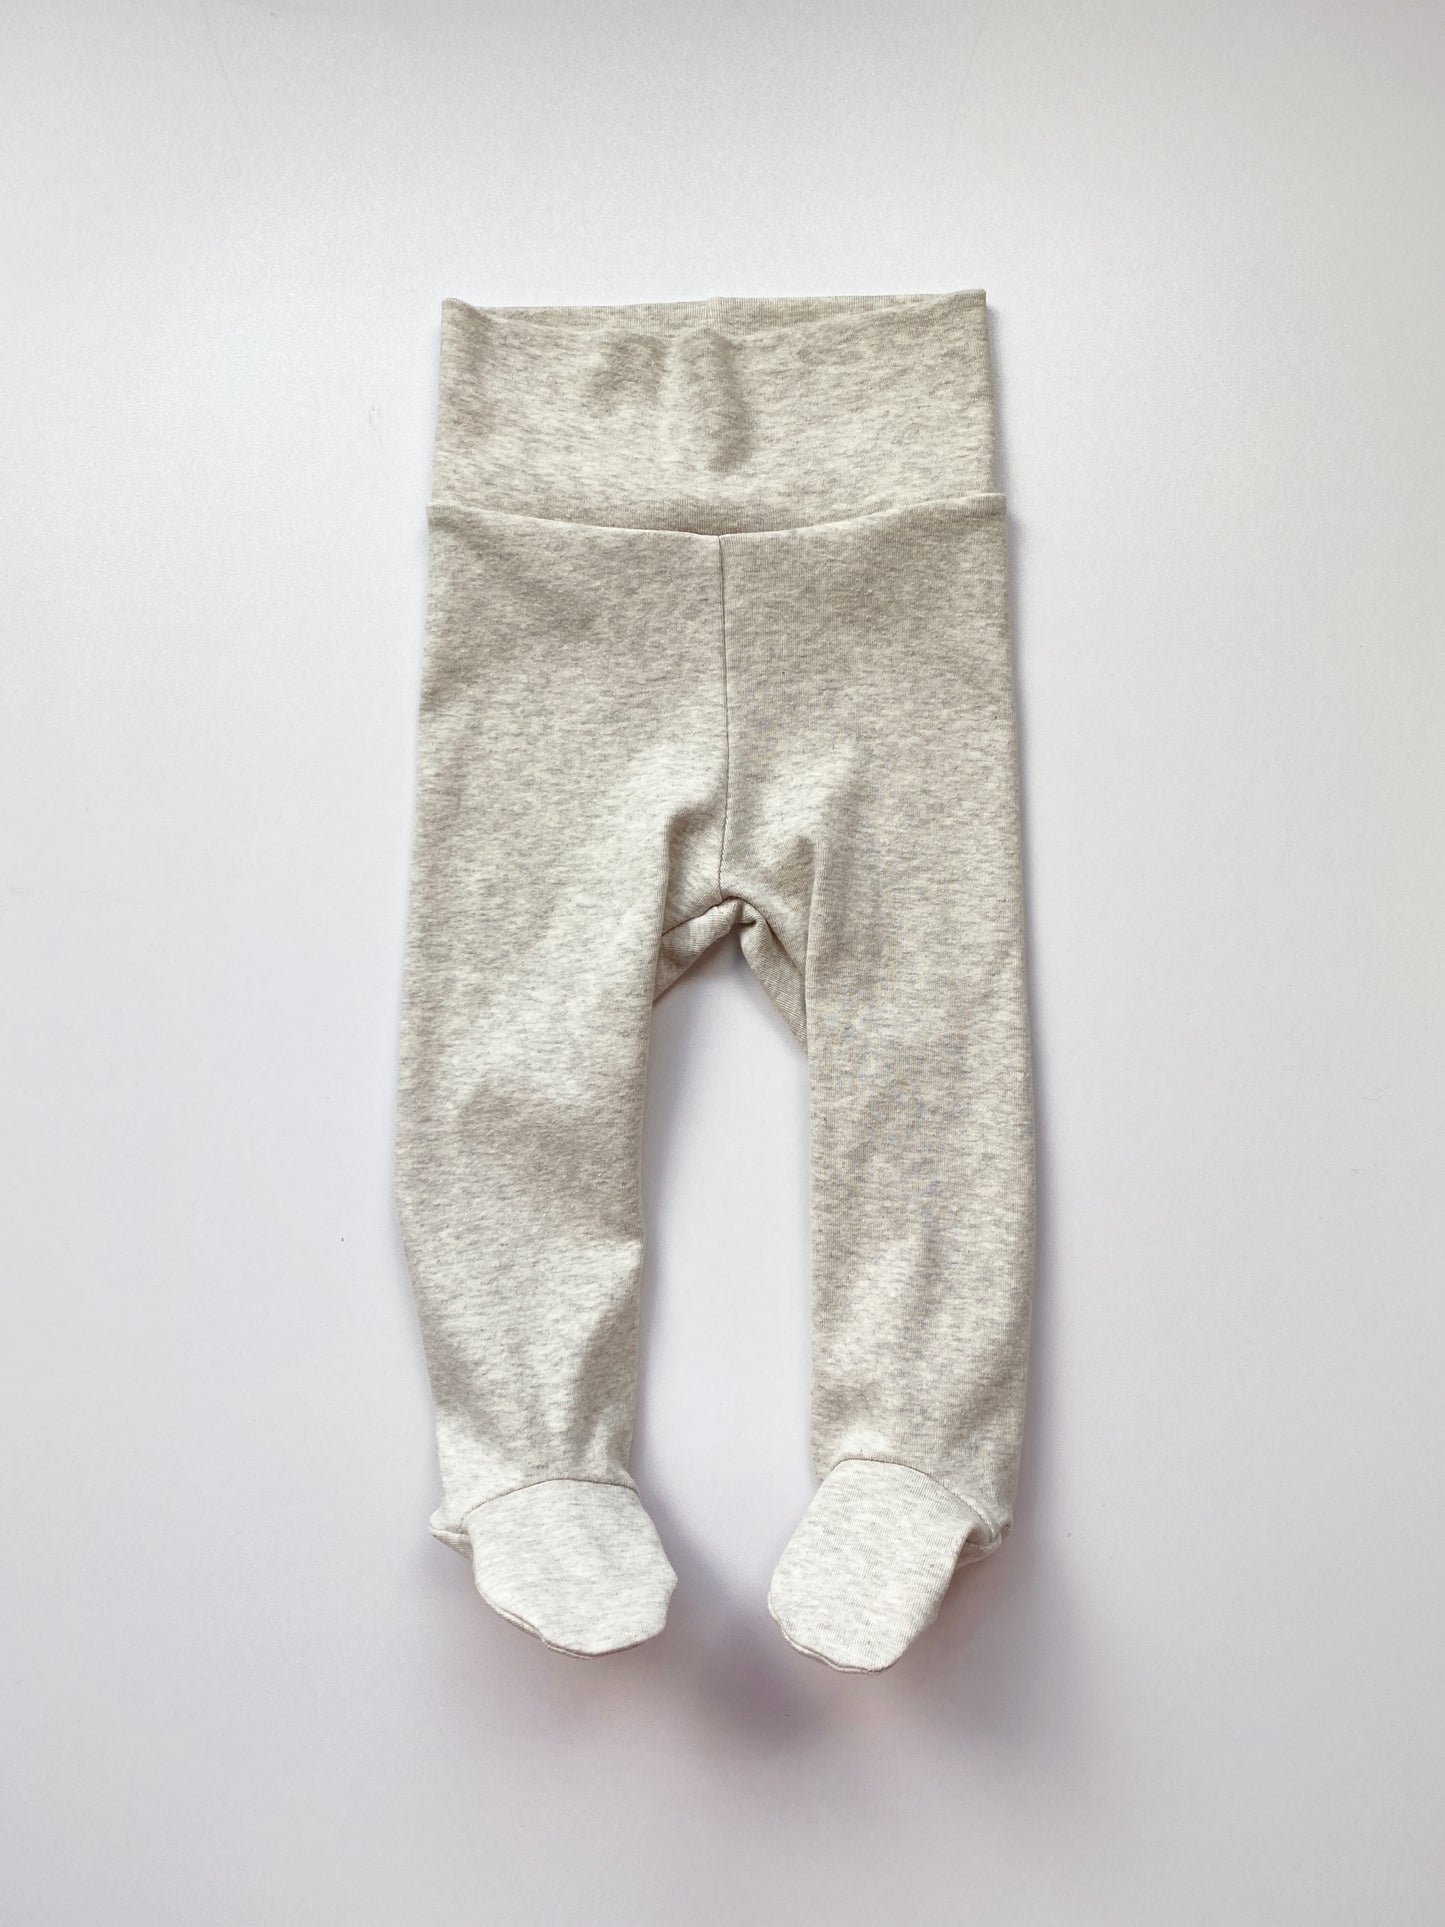 Baby Loungewear Set (footed leggings & tee) sewing pattern